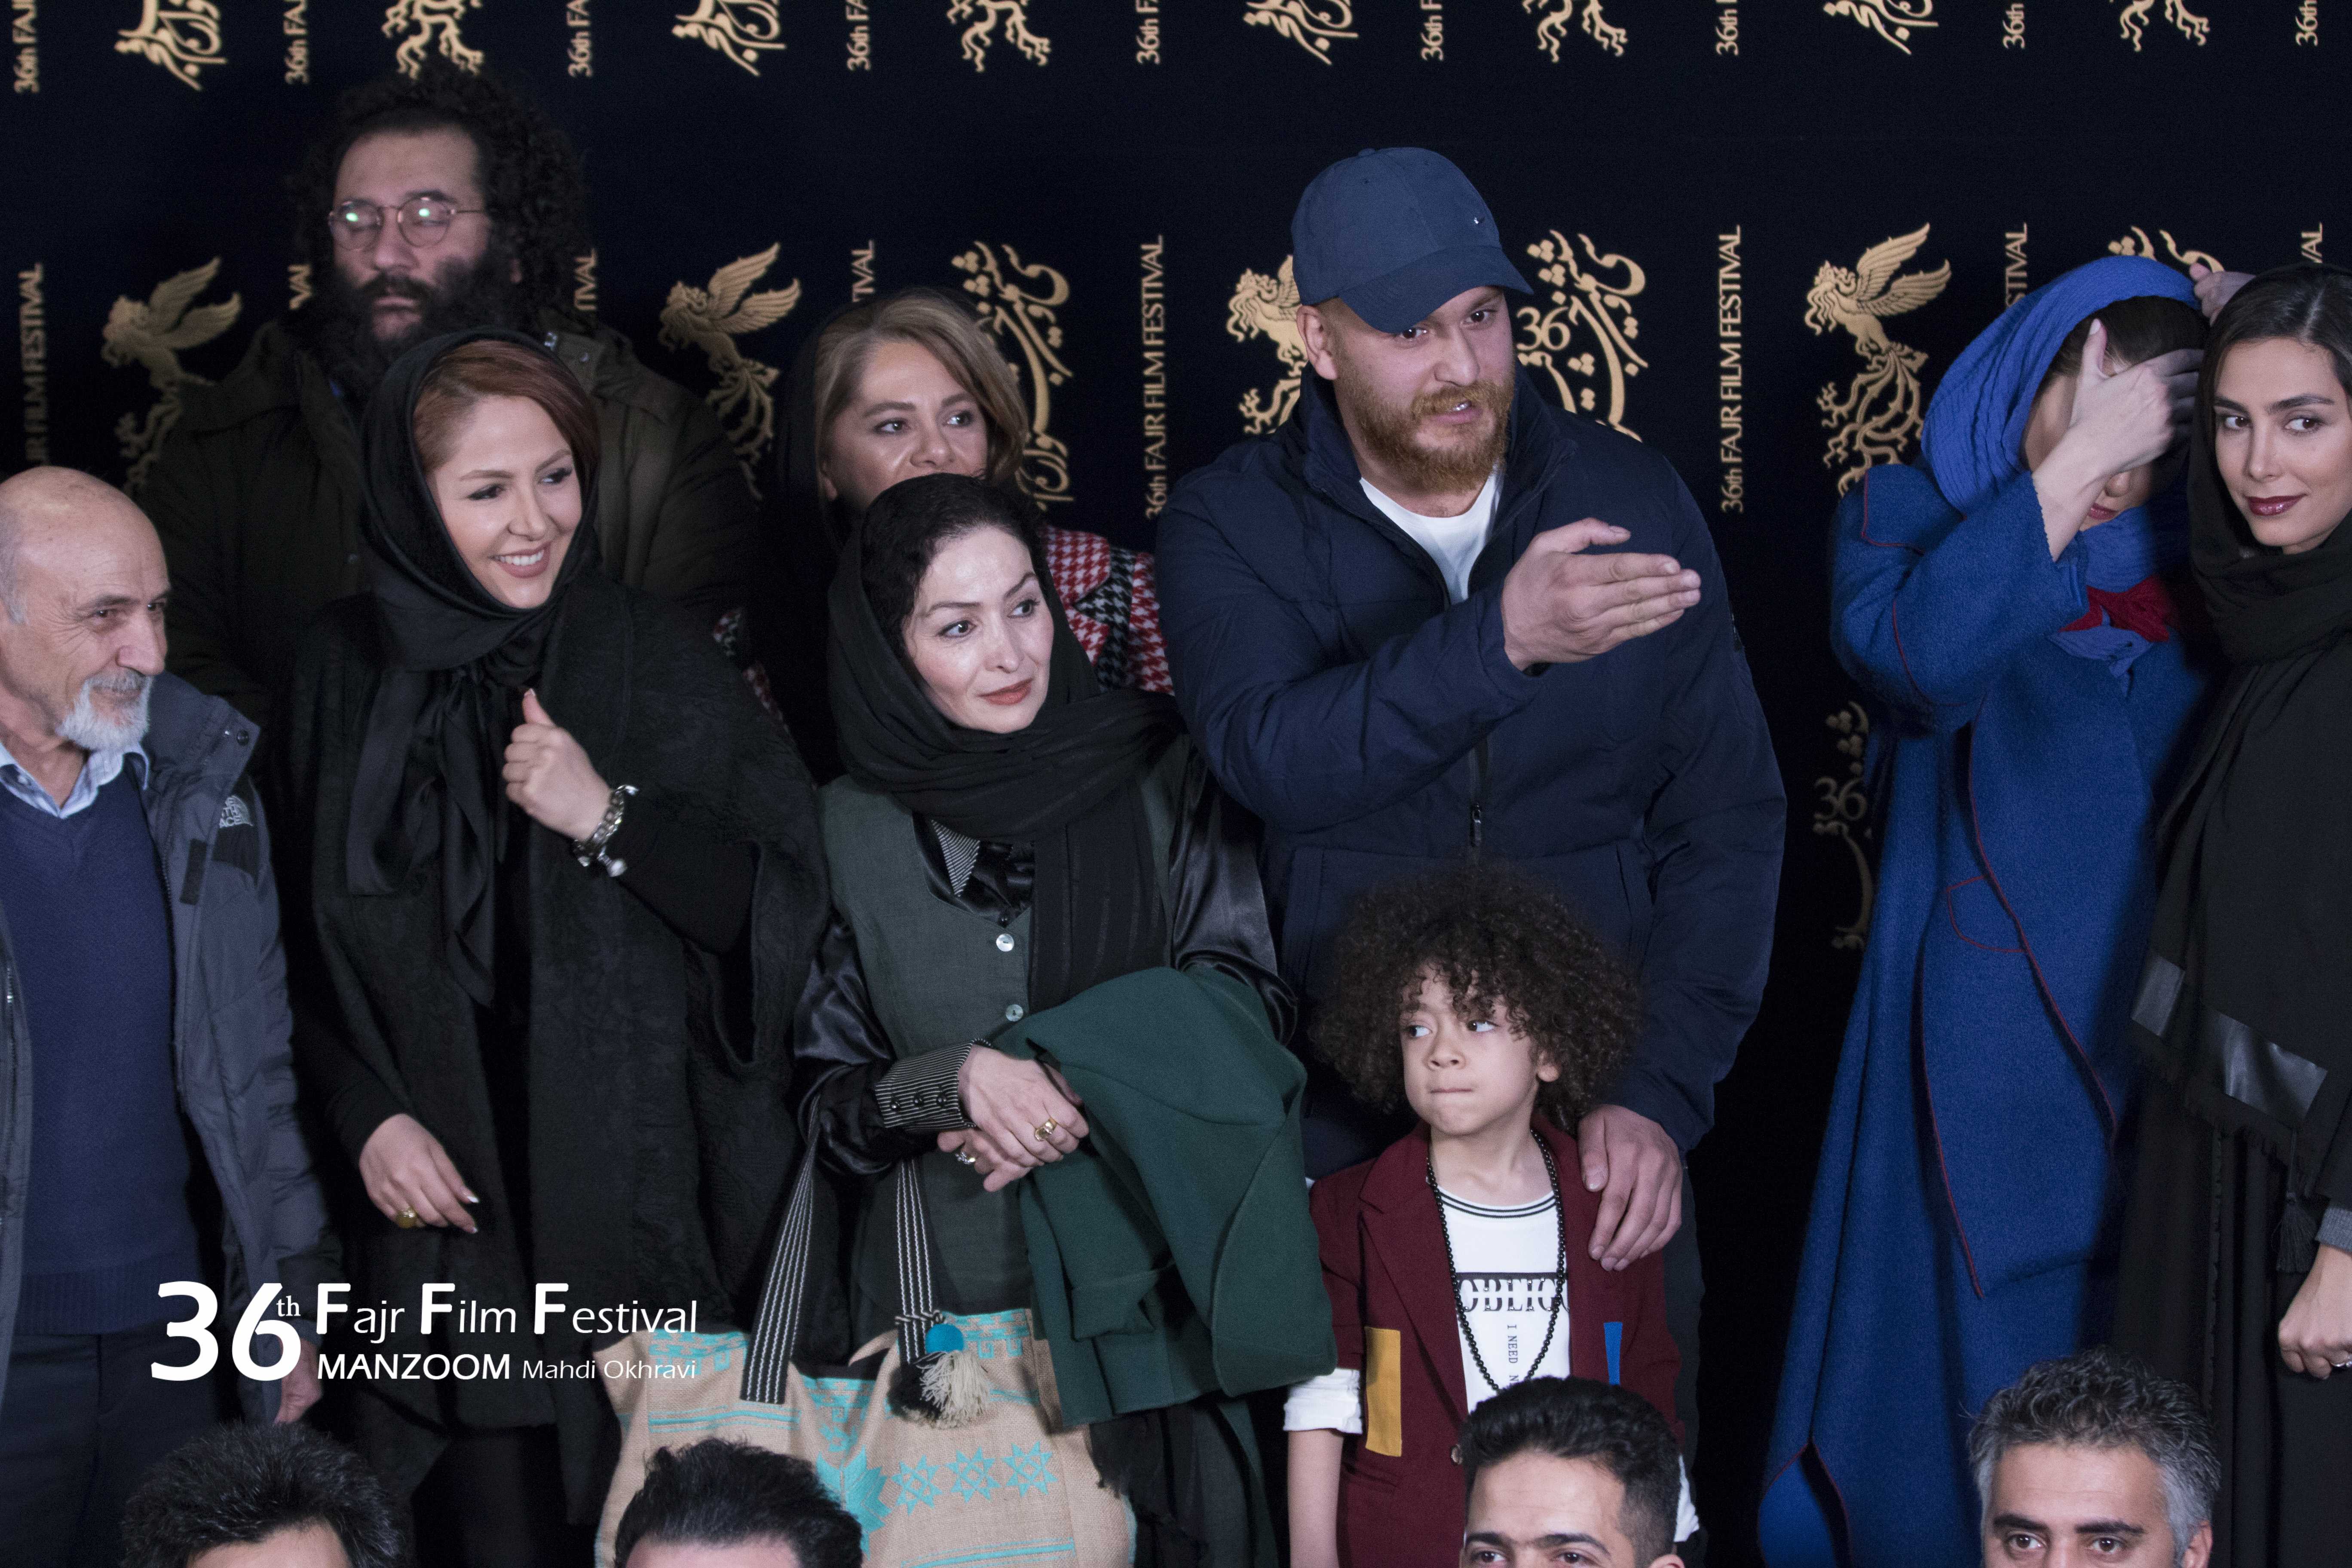 میلاد کی‌مرام در جشنواره فیلم سینمایی امیر به همراه بهدخت ولیان، آرتین گلچین، نیما اقلیما و روشنک سه قلعه‌گی